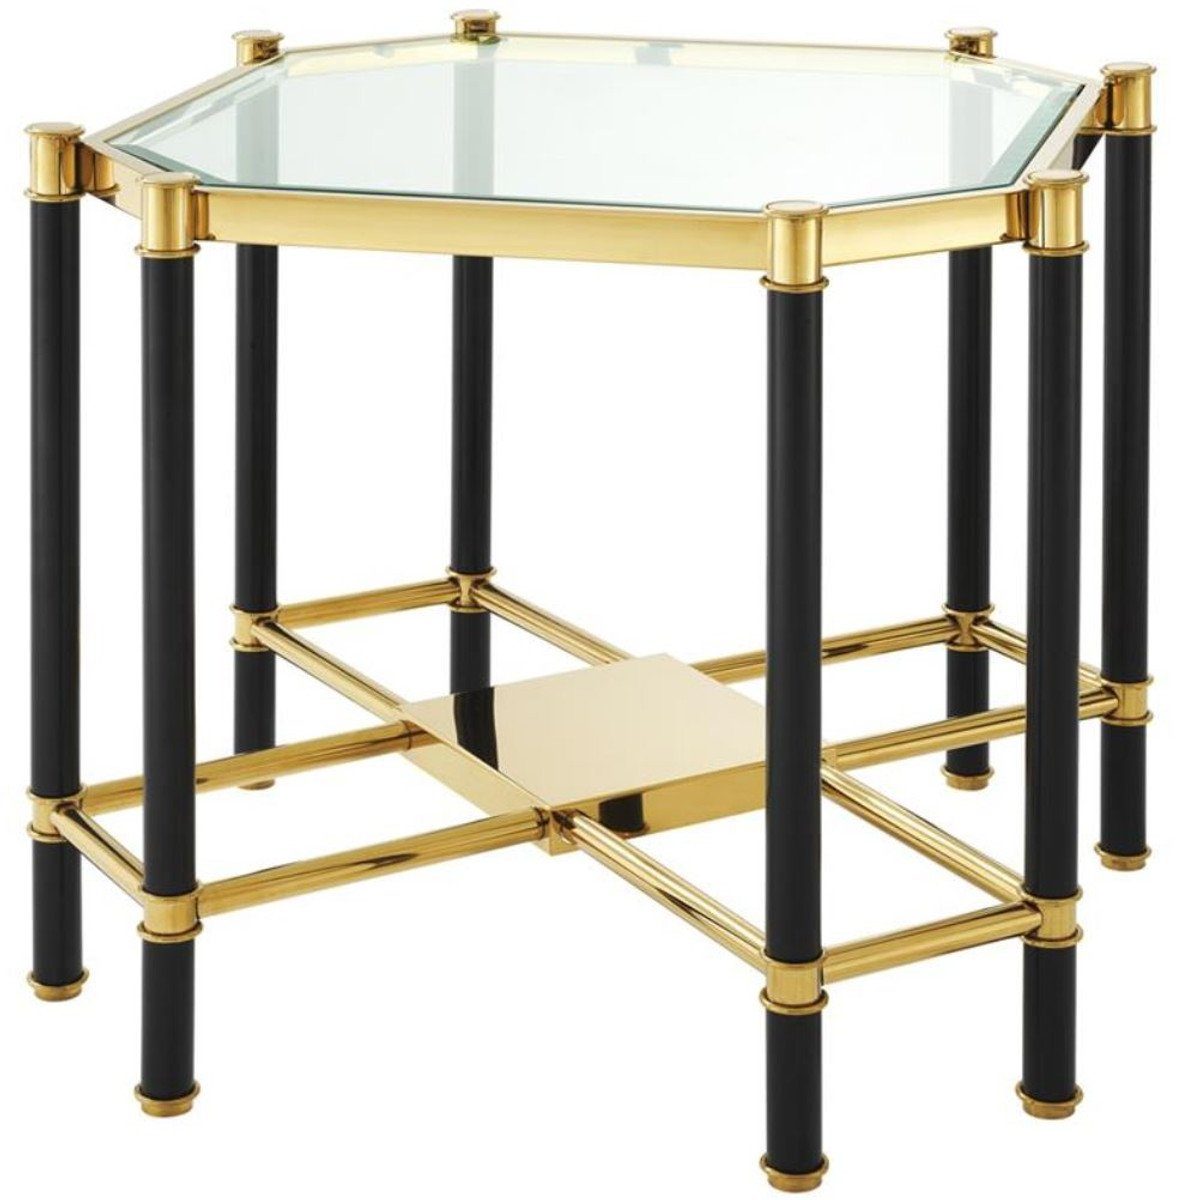 Casa Padrino Beistelltisch Luxus Beistelltisch mit Glasplatte Gold / Schwarz 72,5 x 72,5 x H. 55,5 cm - Wohnzimmermöbel